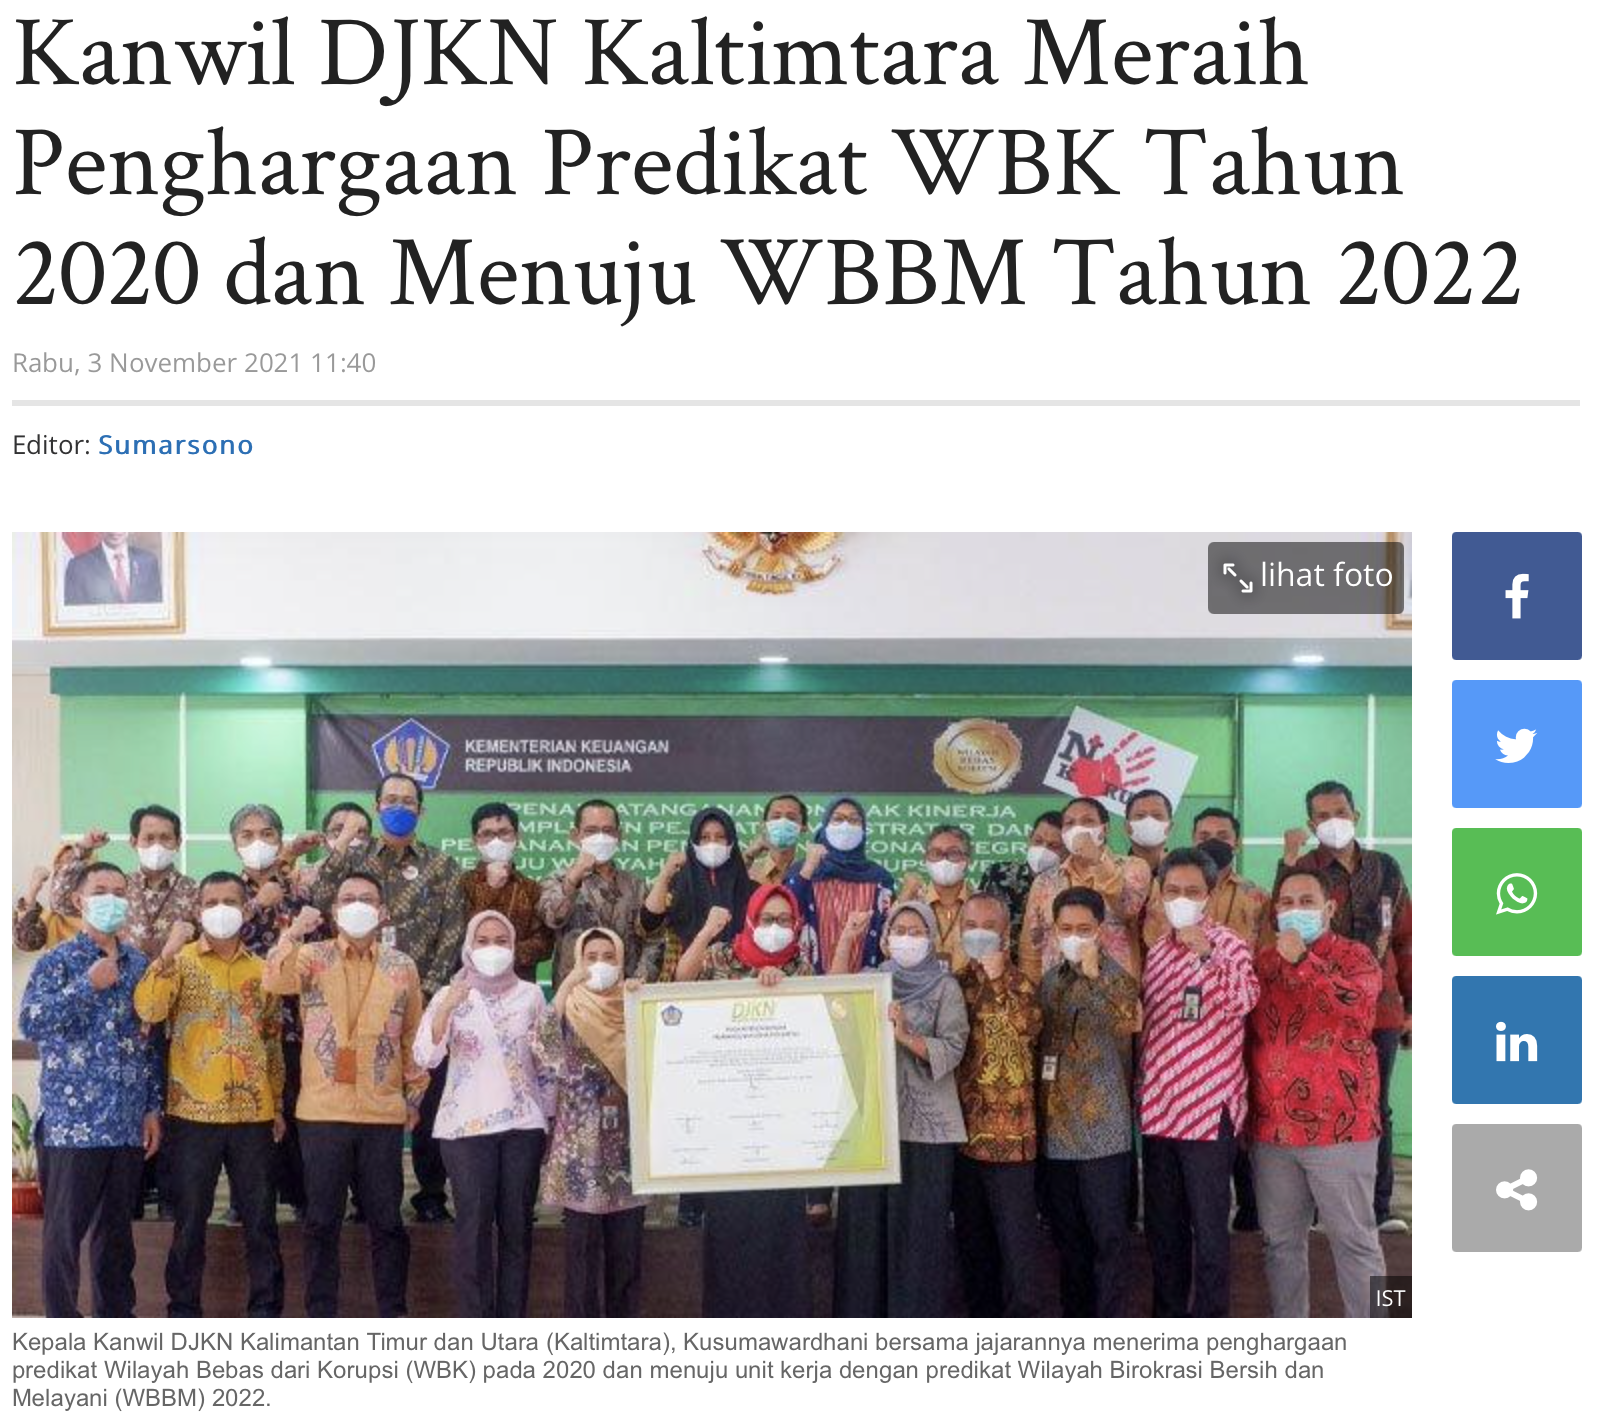 Kanwil DJKN Kaltimtara Meraih Penghargaan Predikat WBK Tahun 2020 dan Menuju WBBM Tahun 2022